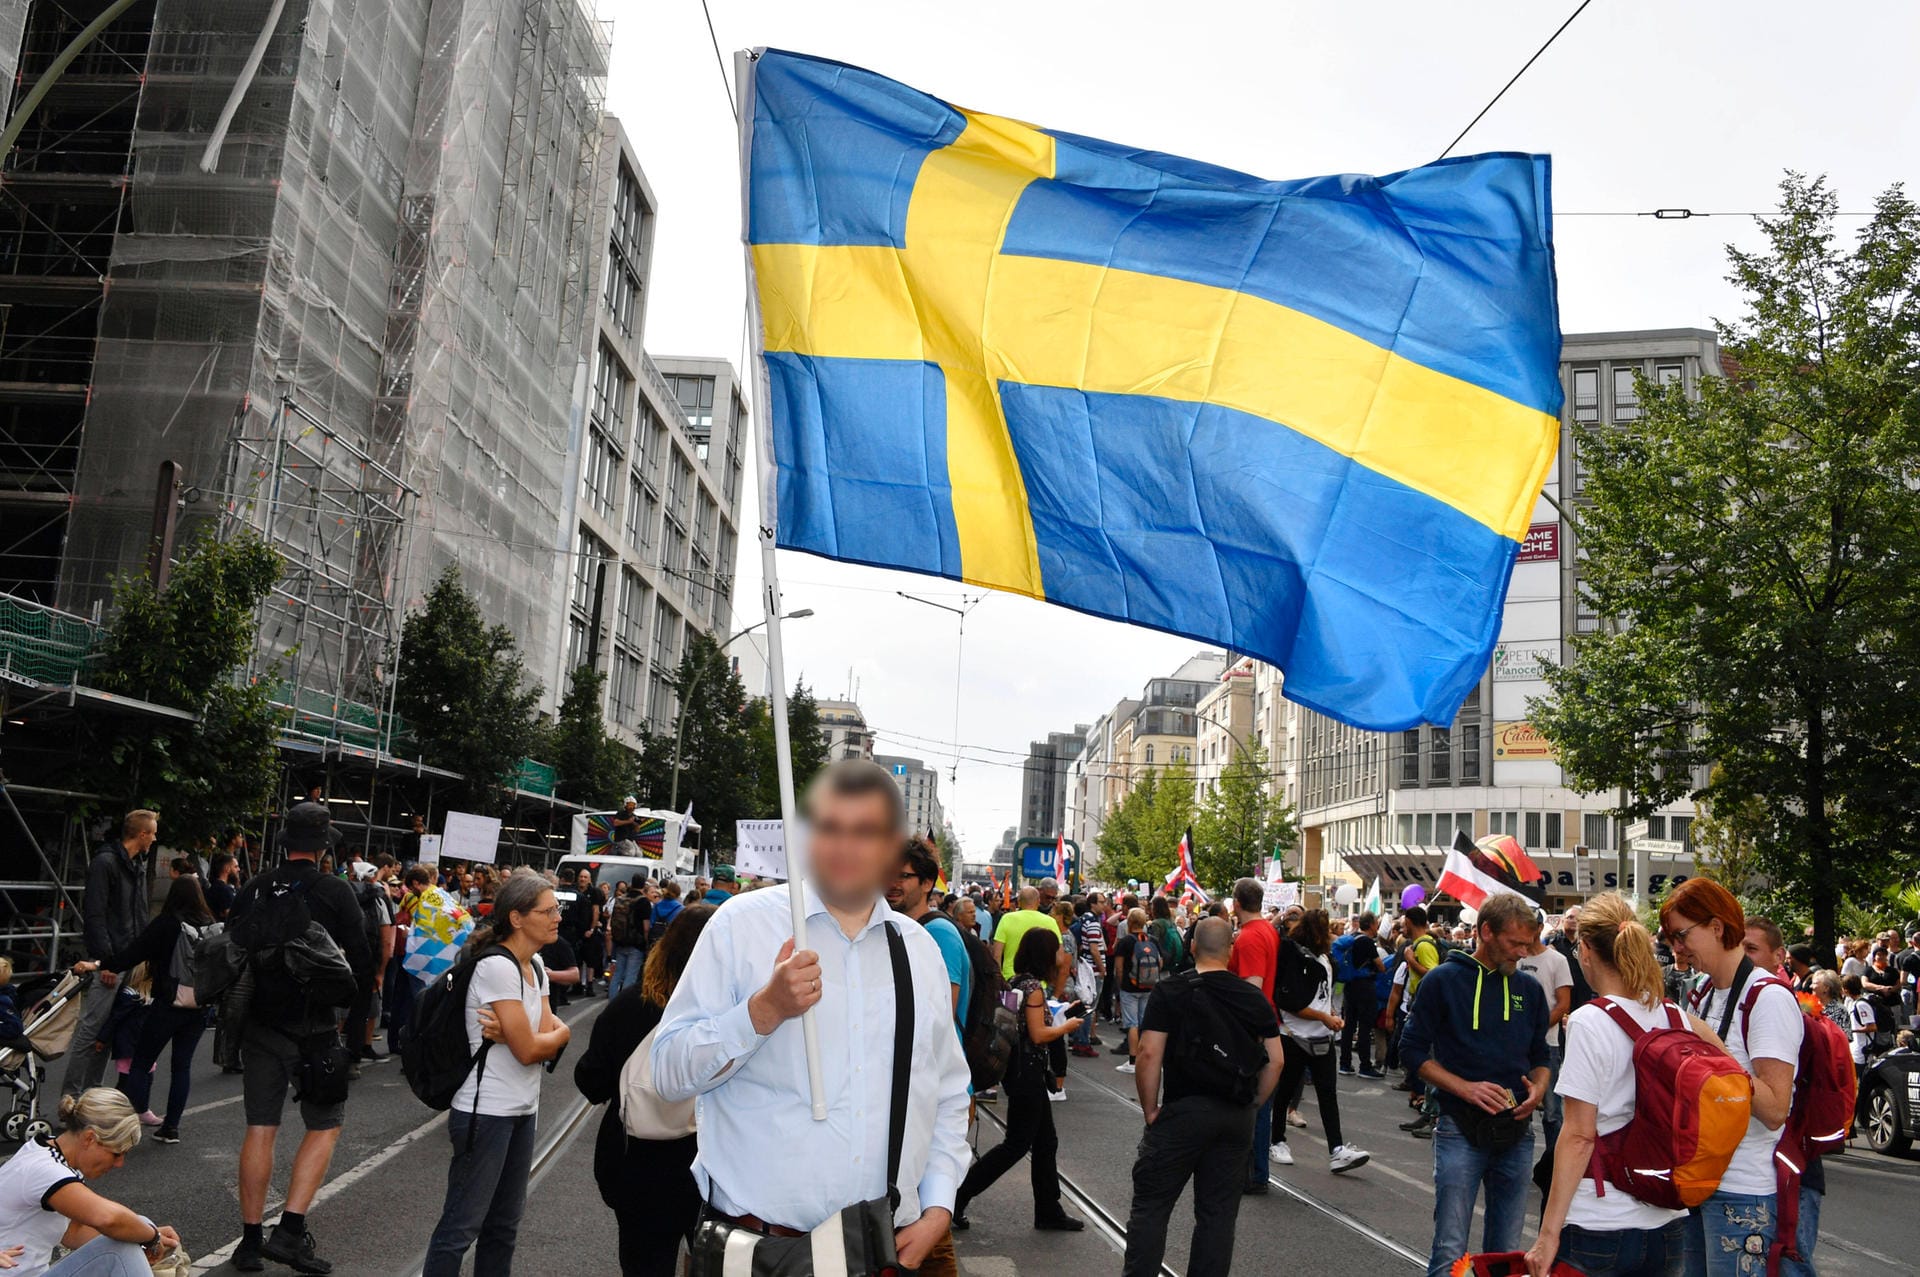 Auch die Schwedische Flagge weht mit: Sie steht für den Sonderweg Schwedens. Trotz der steigenden Fallzahlen, wird der Umgang der schwedischen Regierung, mit der Corona-Pandemie, von den Demonstrierenden befürwortet.